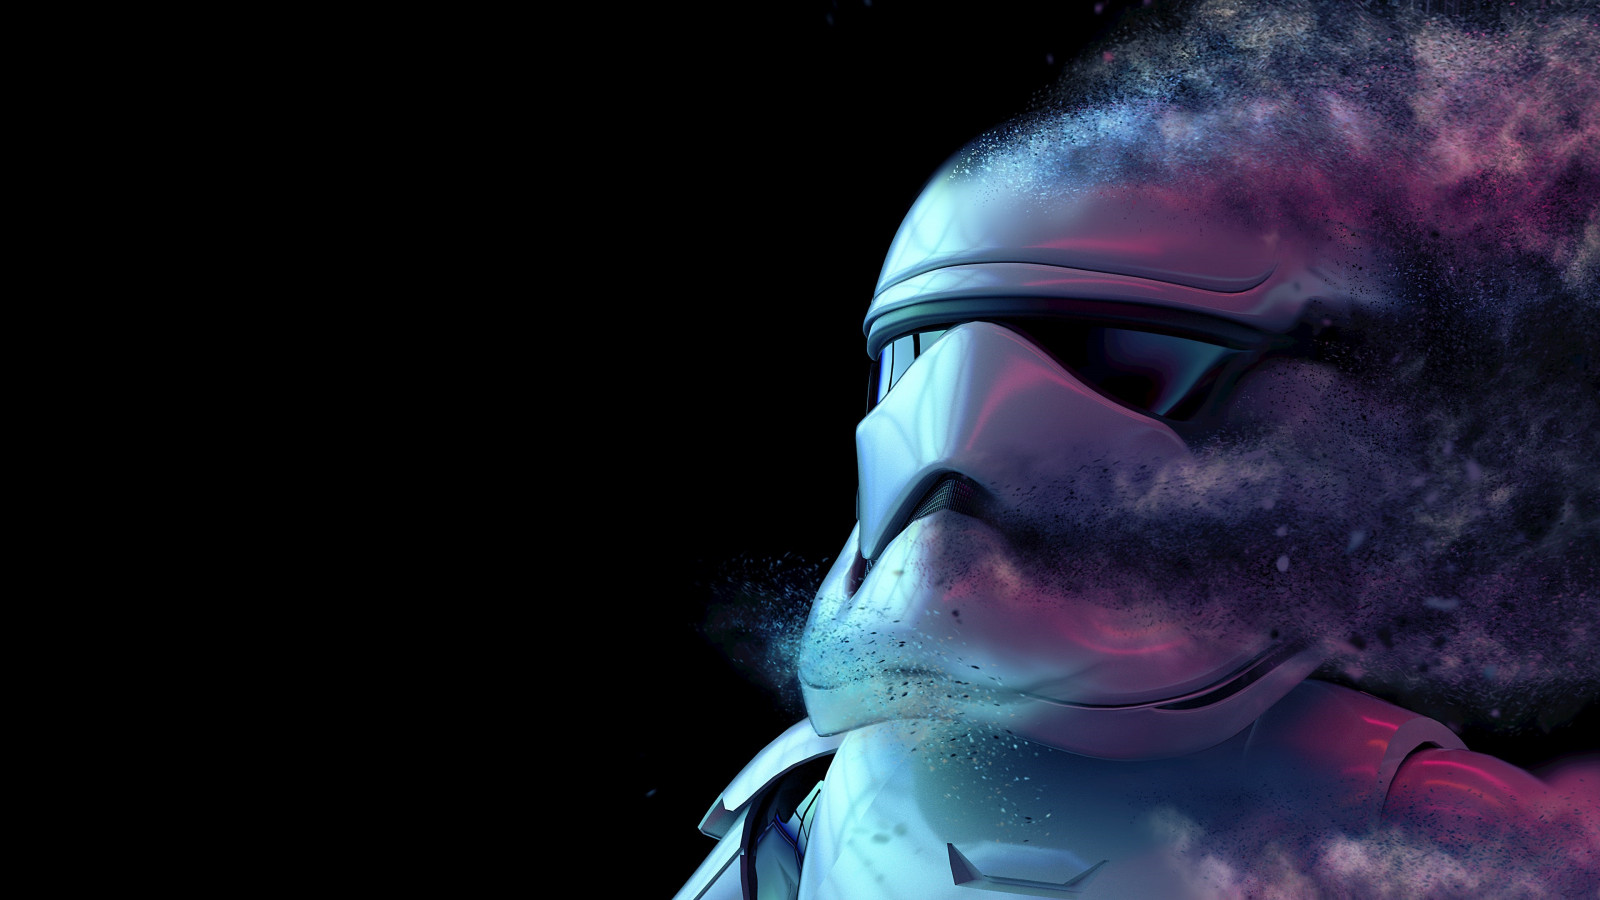 Storm Trooper from Star Wars wallpaper 1600x900